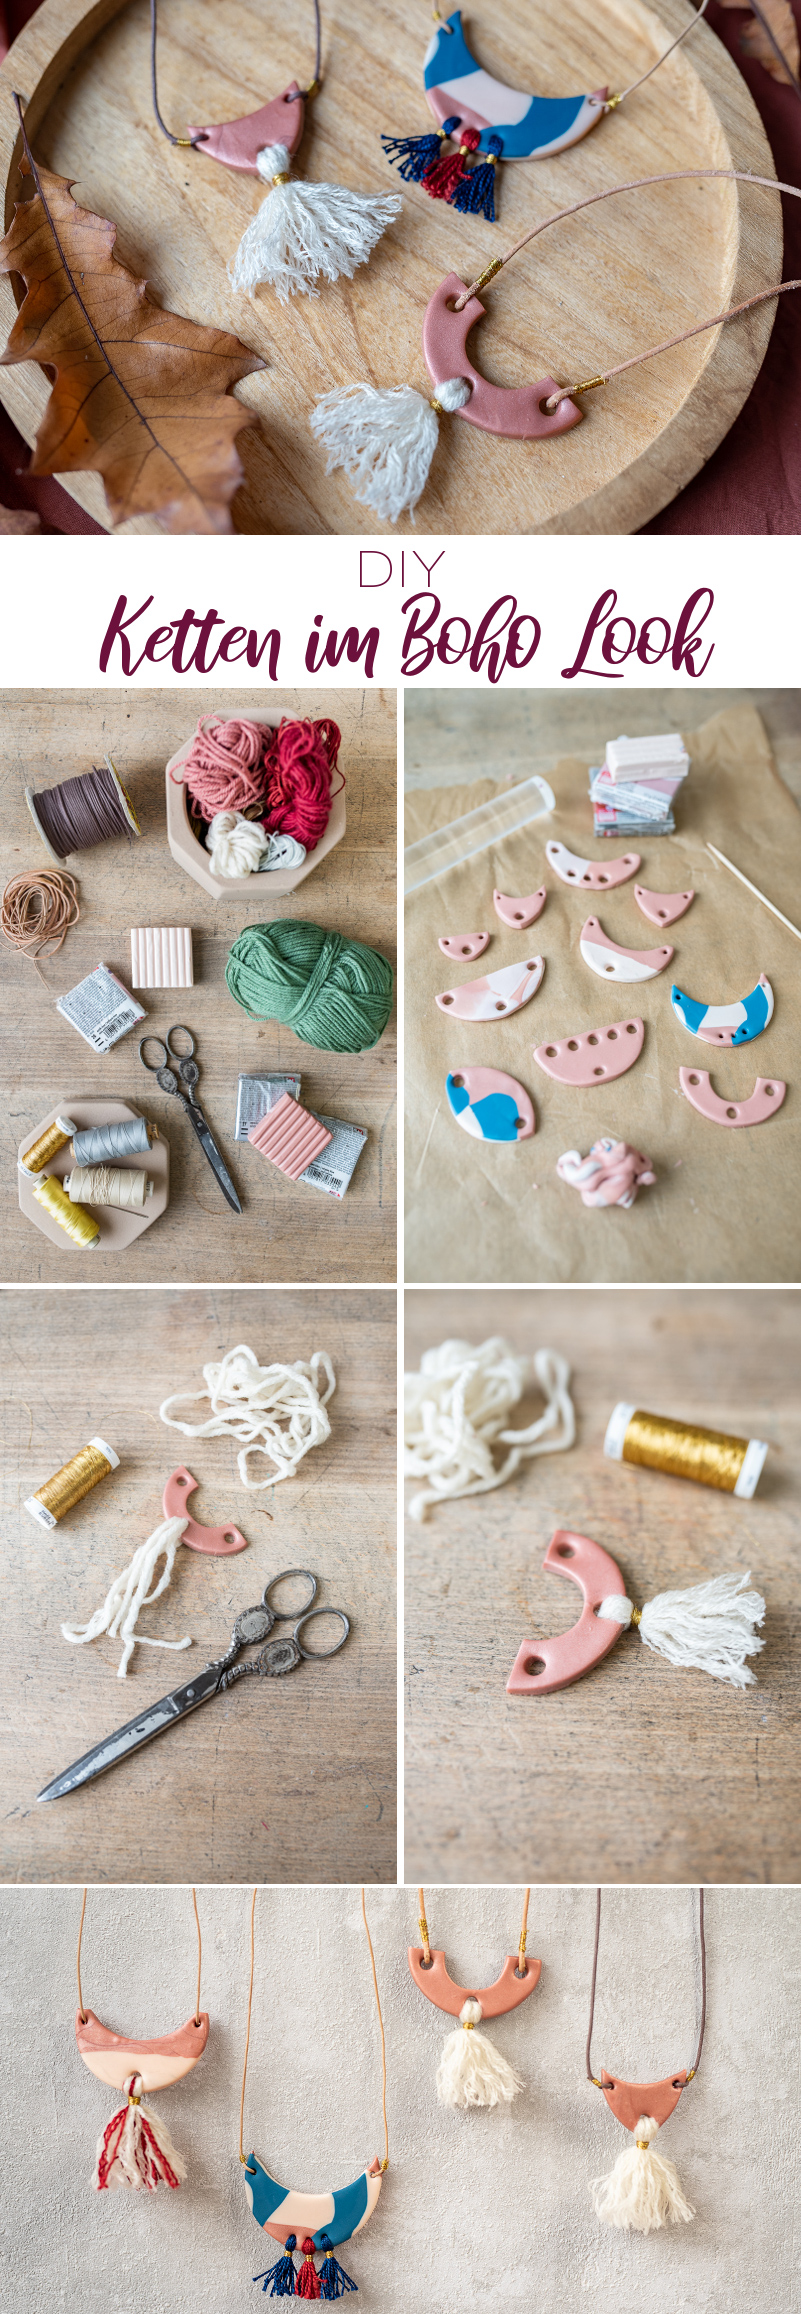 Anleitung für selbst gemachte DIY Geschenke zu Weihnachten für Ketten aus Fimo mit Wolle im Boho Look als Weihnachtsgeschenk für die Freundin